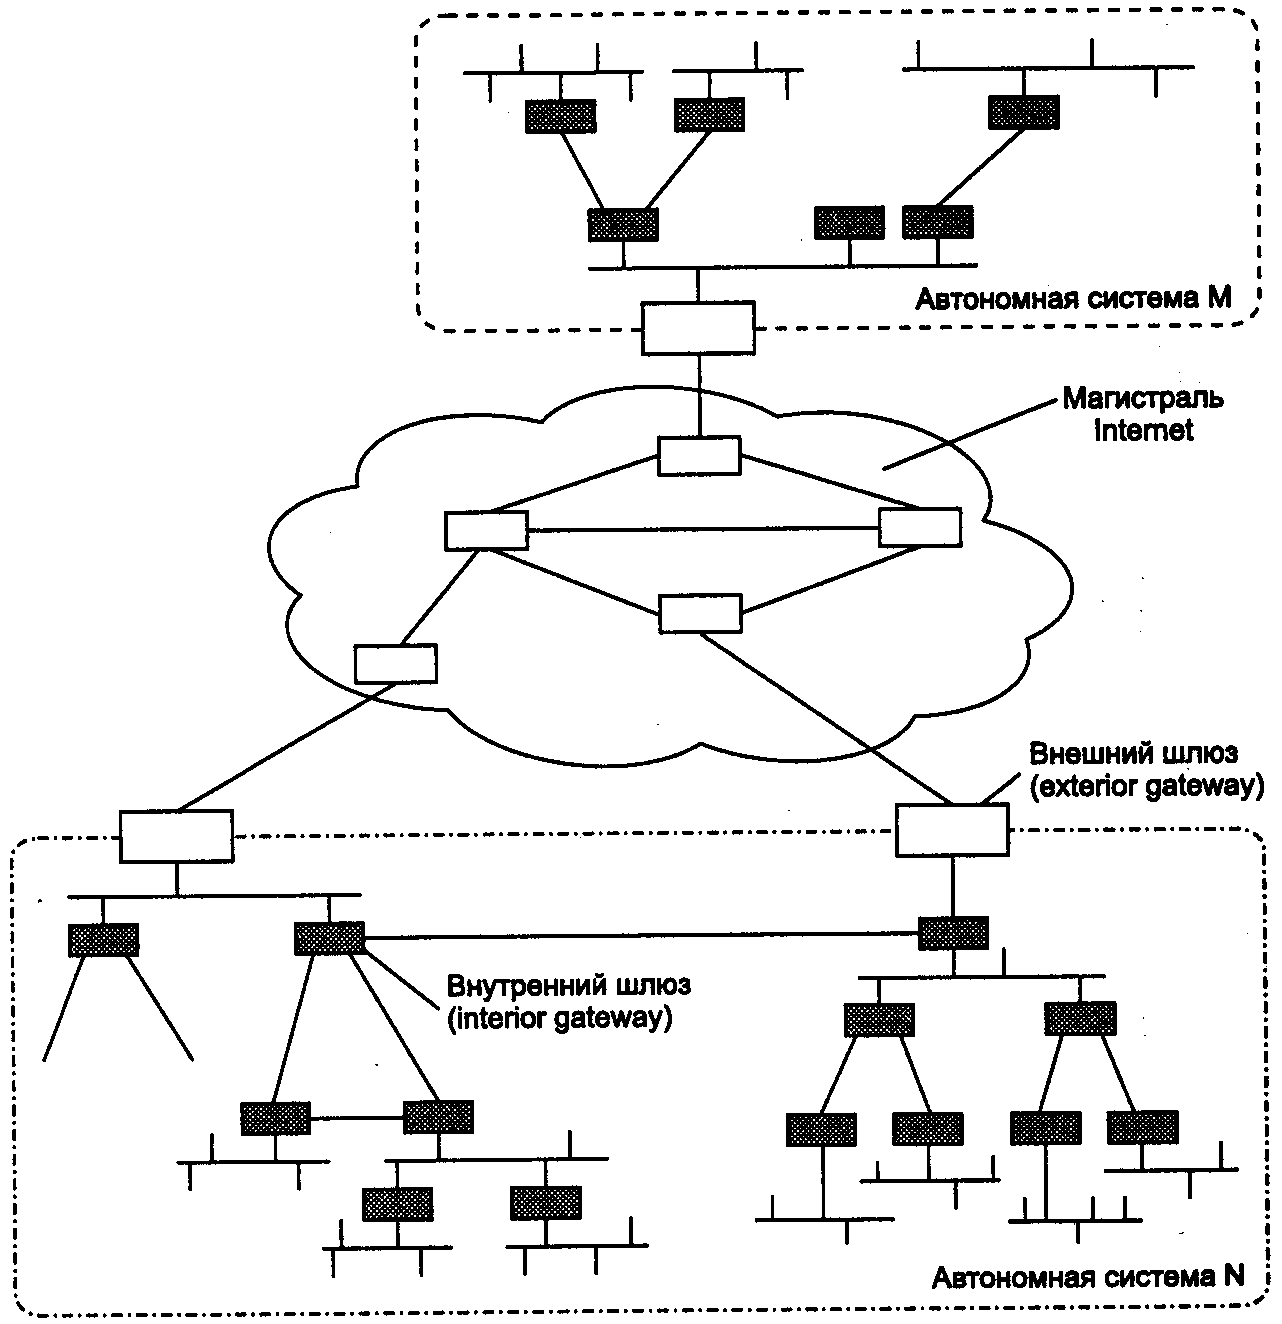 Основные принципы работы сетевой маршрутизации